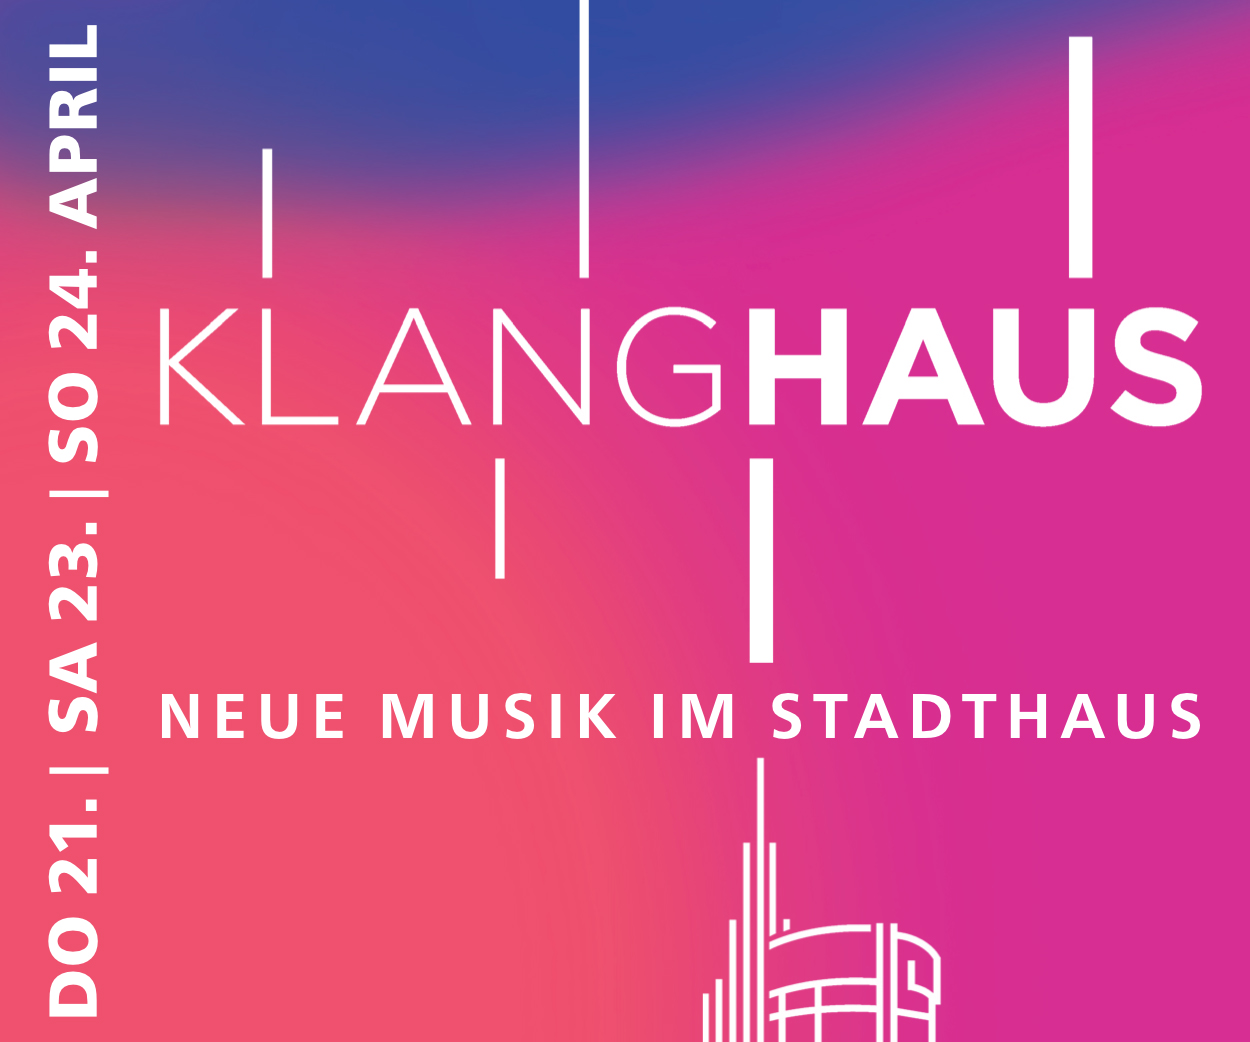 KlangHaus - auf blau-rot-pinkem Hintergrund präsentiert sich das Logo zur Konzert-Reihe "KlangHaus", Termine: 21., 23. und 24. April 2022 